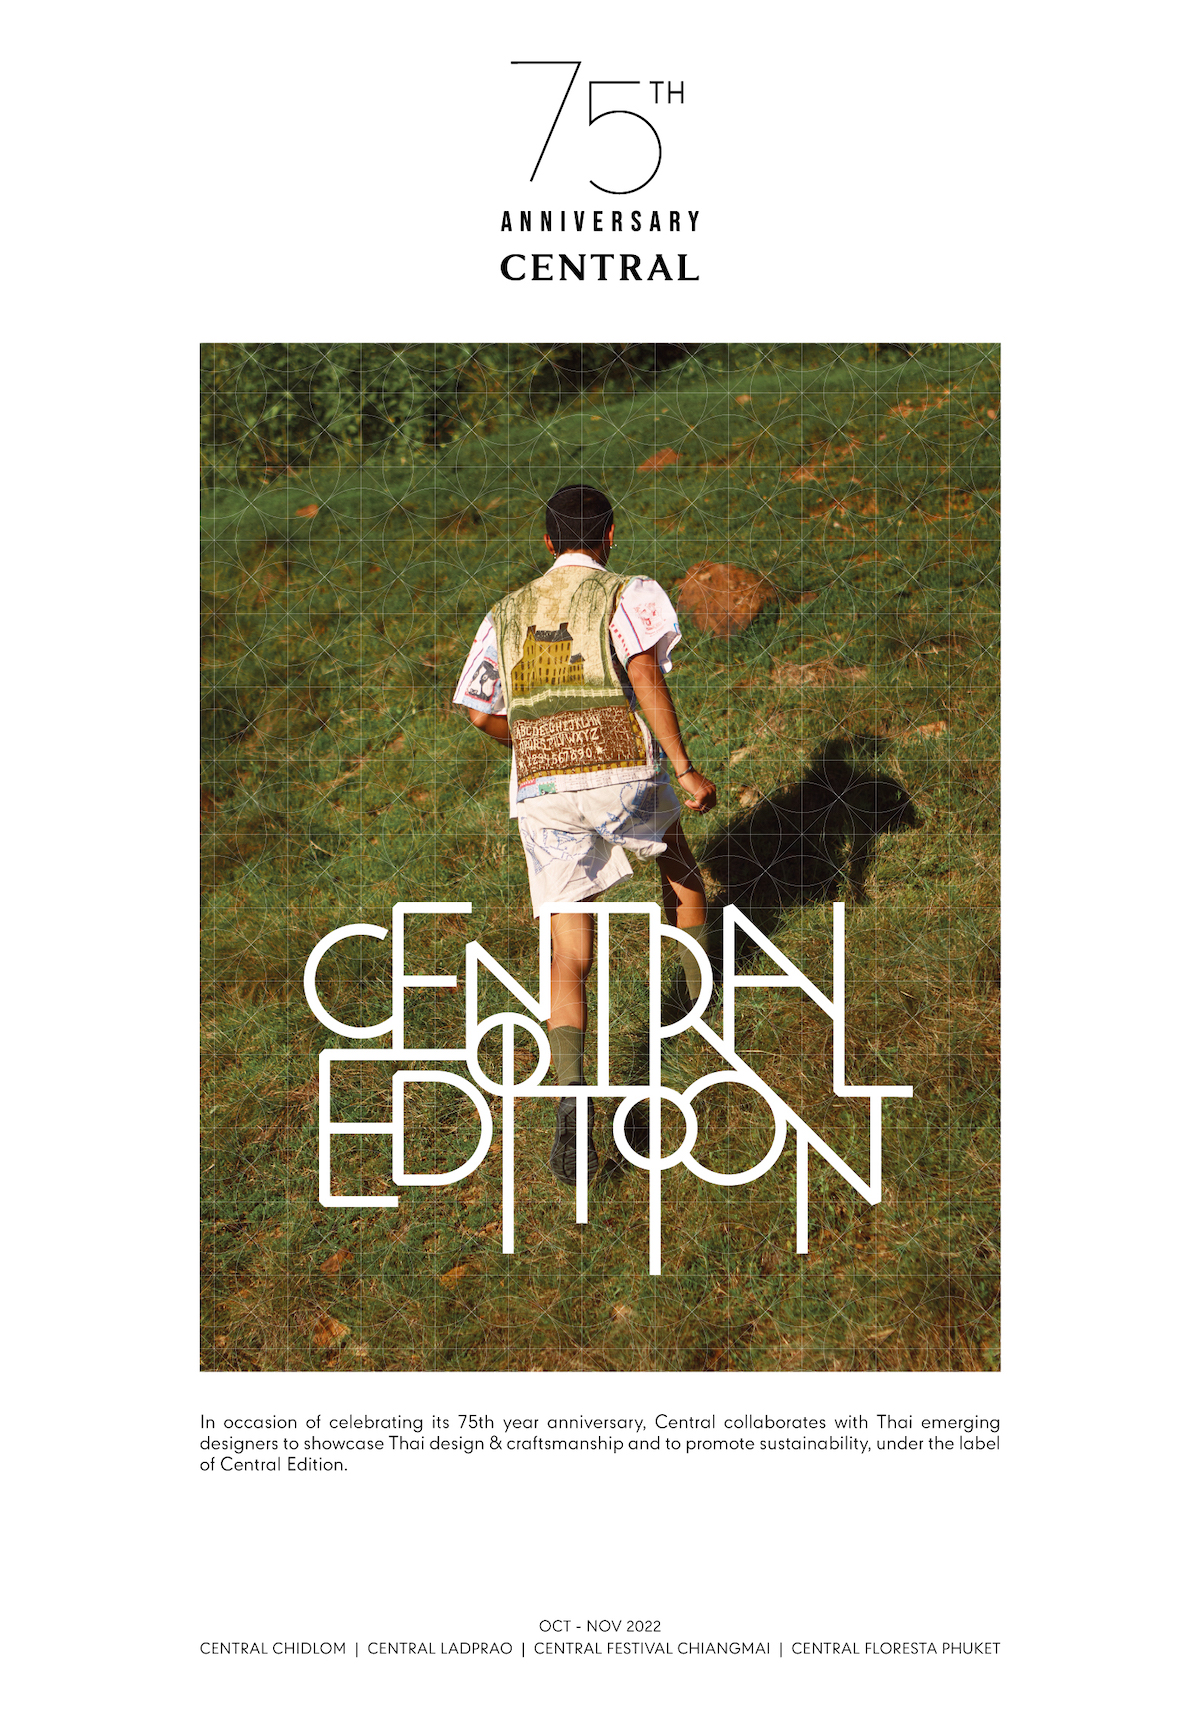 ห้างเซ็นทรัล ฉลองครบรอบ 75 ปี จัดงาน “Central Edition” ที่เซ็นทรัลเชียงใหม่ ลาดพร้าว ชิดลม และภูเก็ต